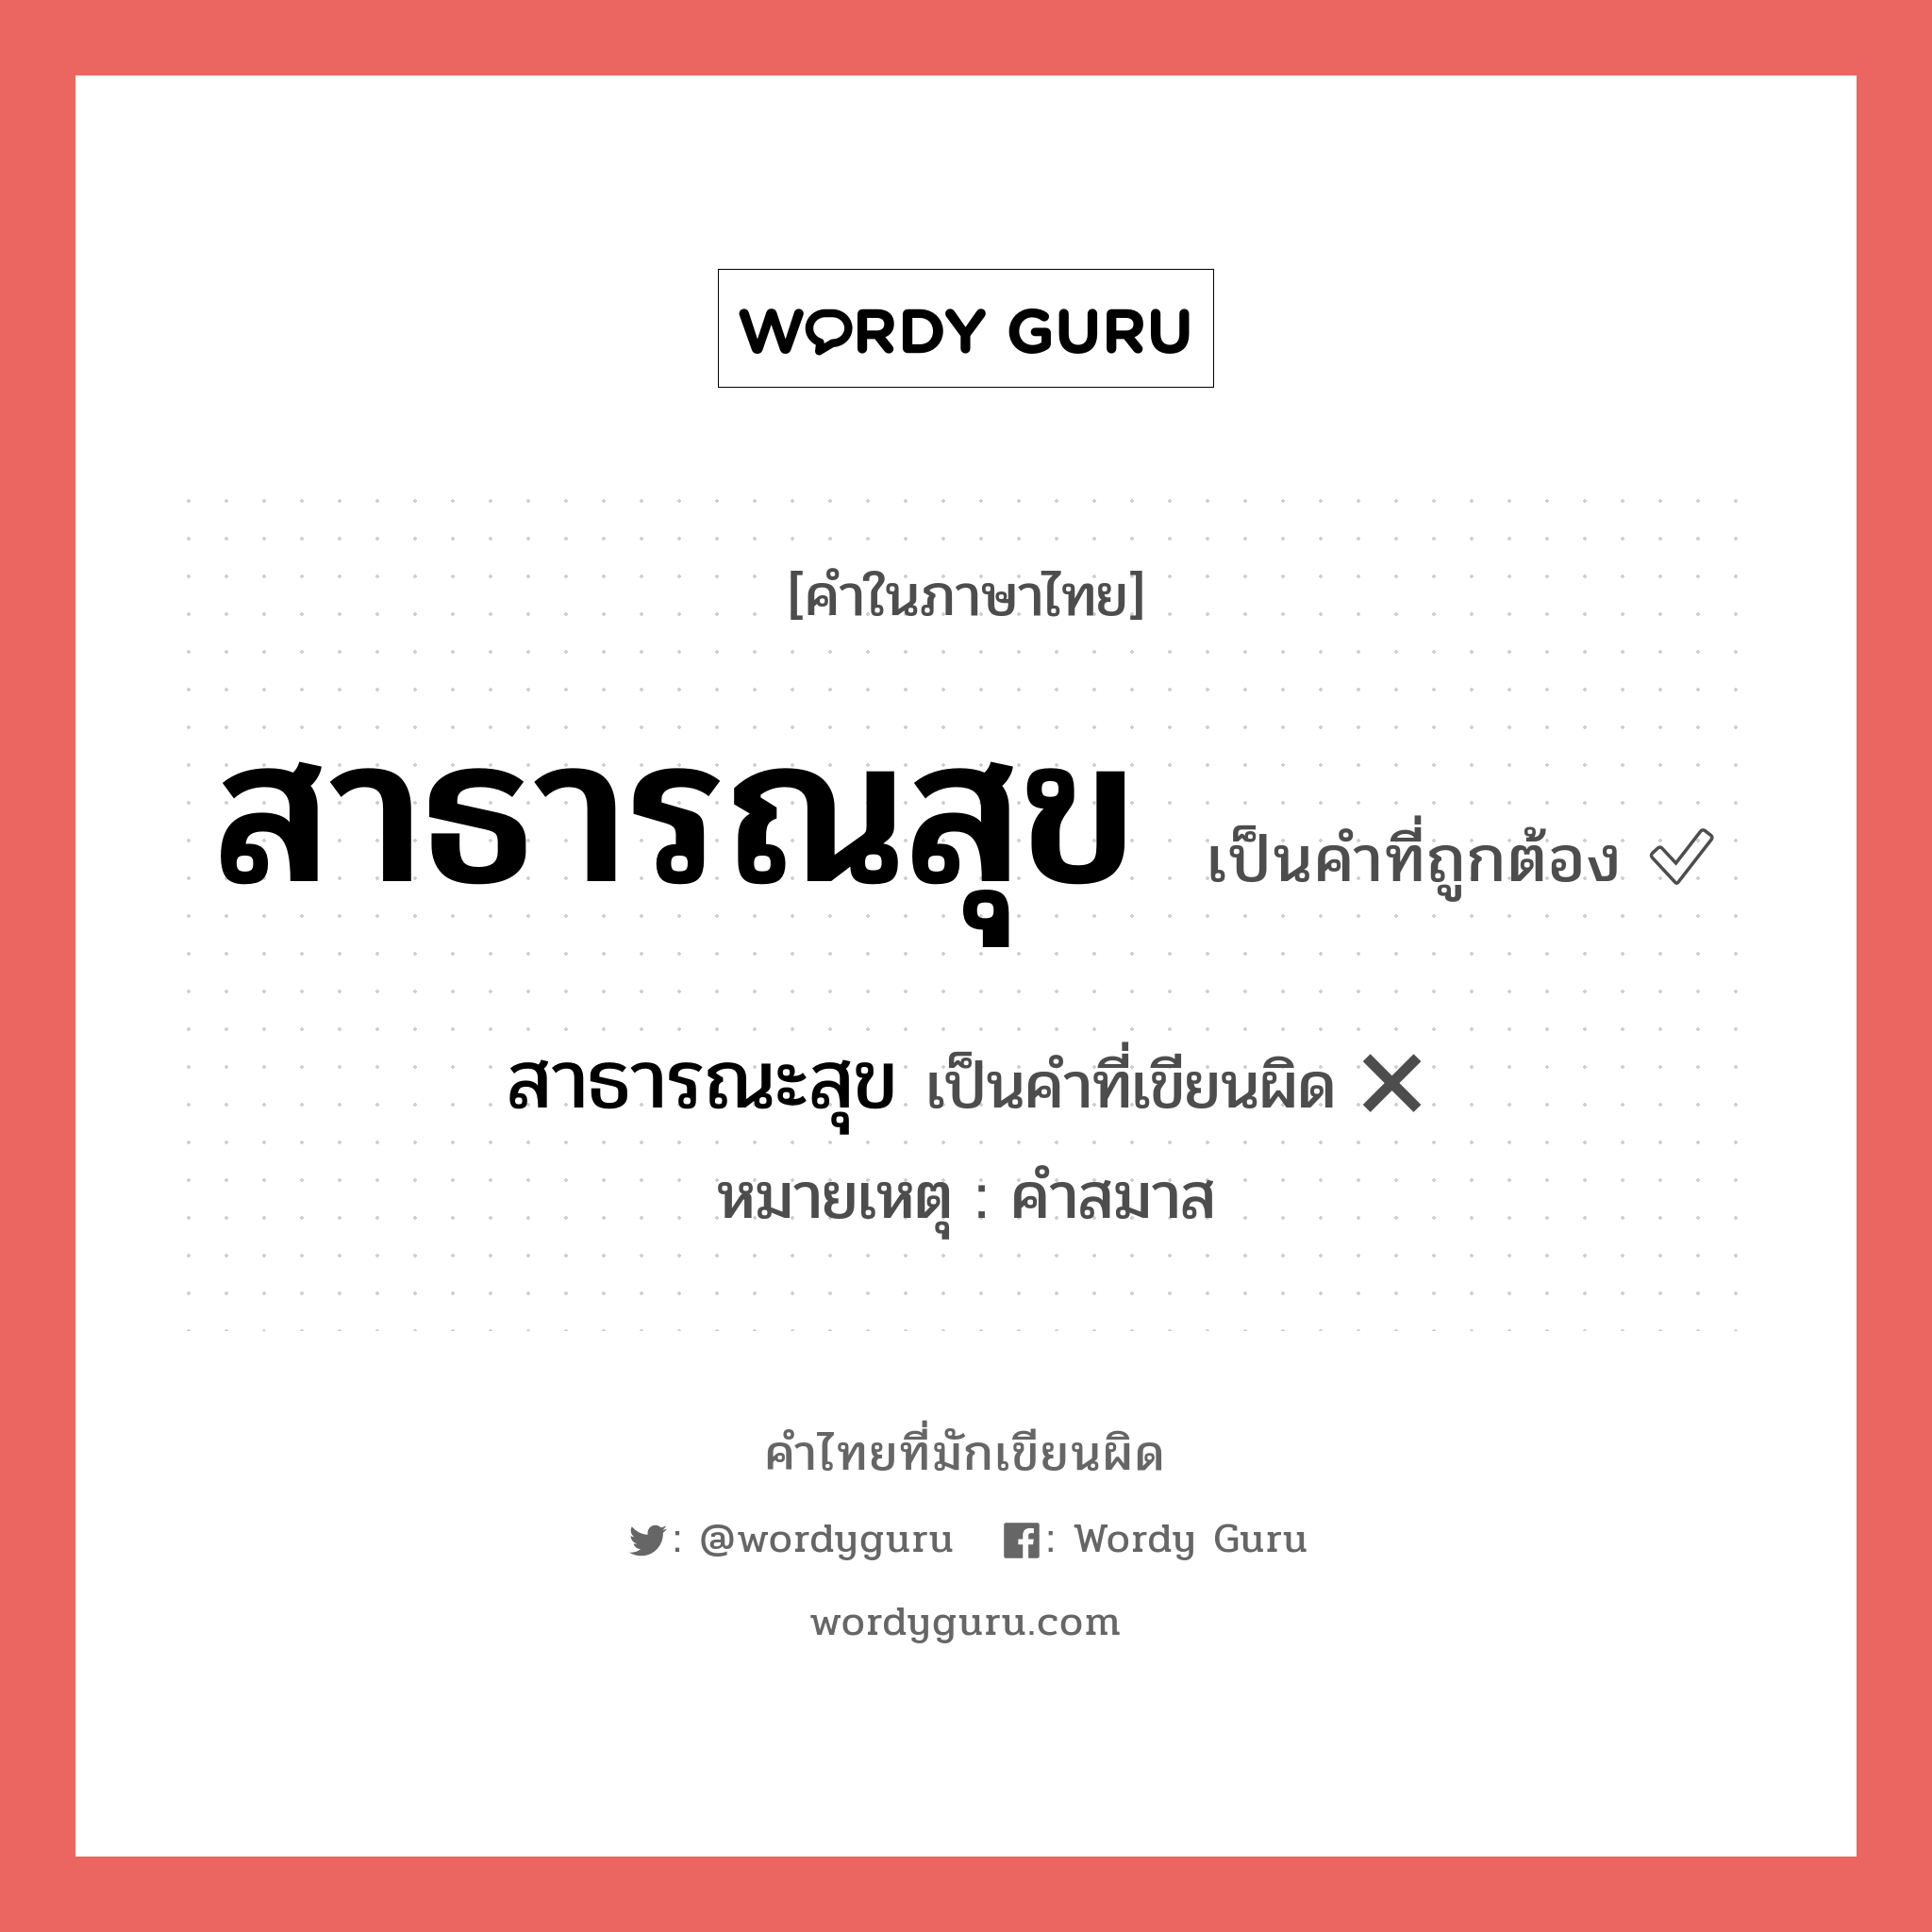 สาธารณสุข หรือ สาธารณะสุข คำไหนเขียนถูก?, คำในภาษาไทยที่มักเขียนผิด สาธารณสุข คำที่ผิด ❌ สาธารณะสุข หมายเหตุ คำสมาส